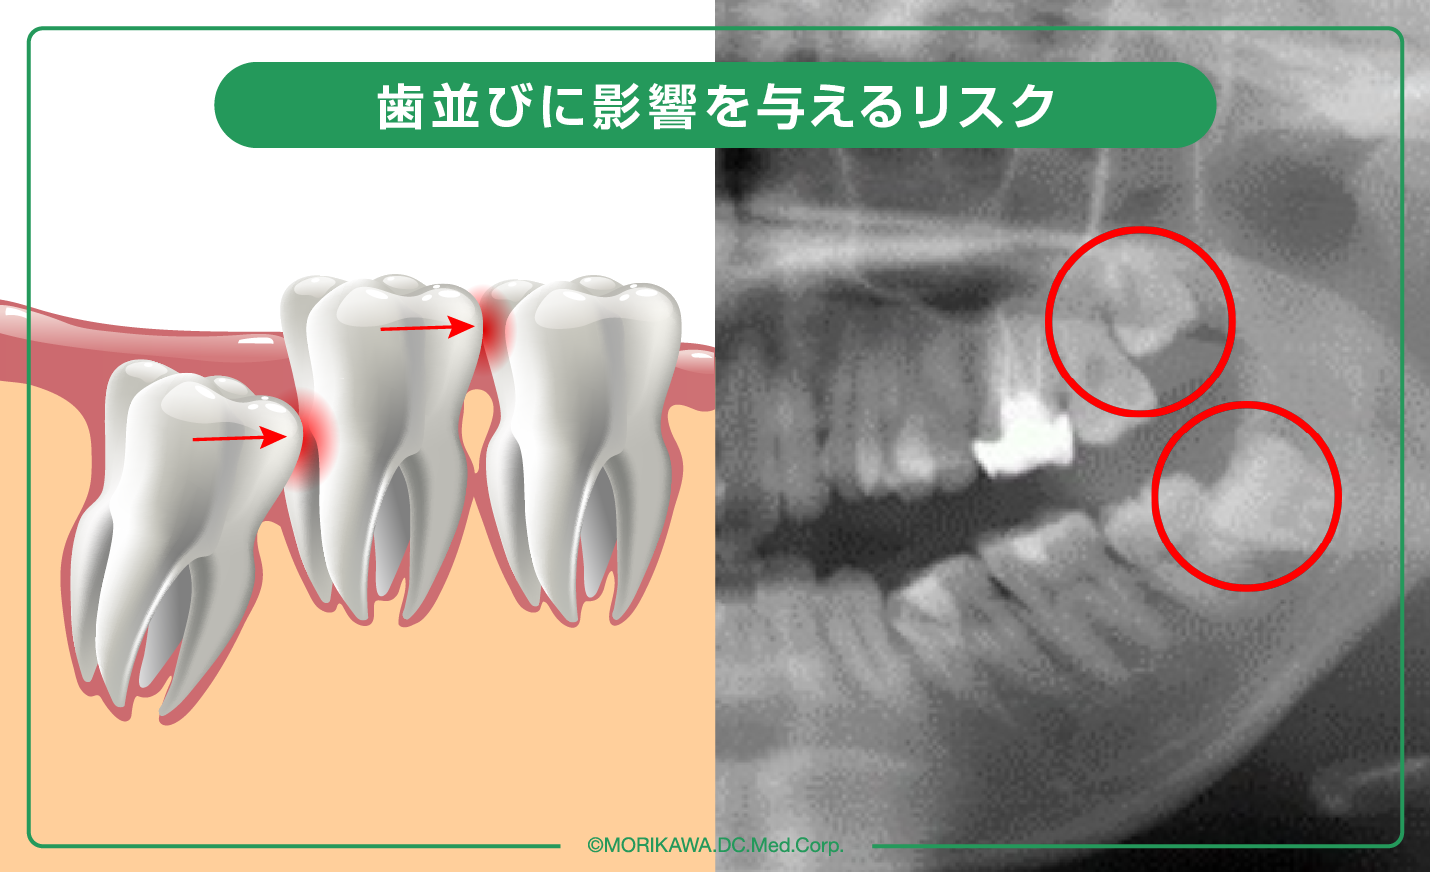 歯並びに影響を与えるリスク